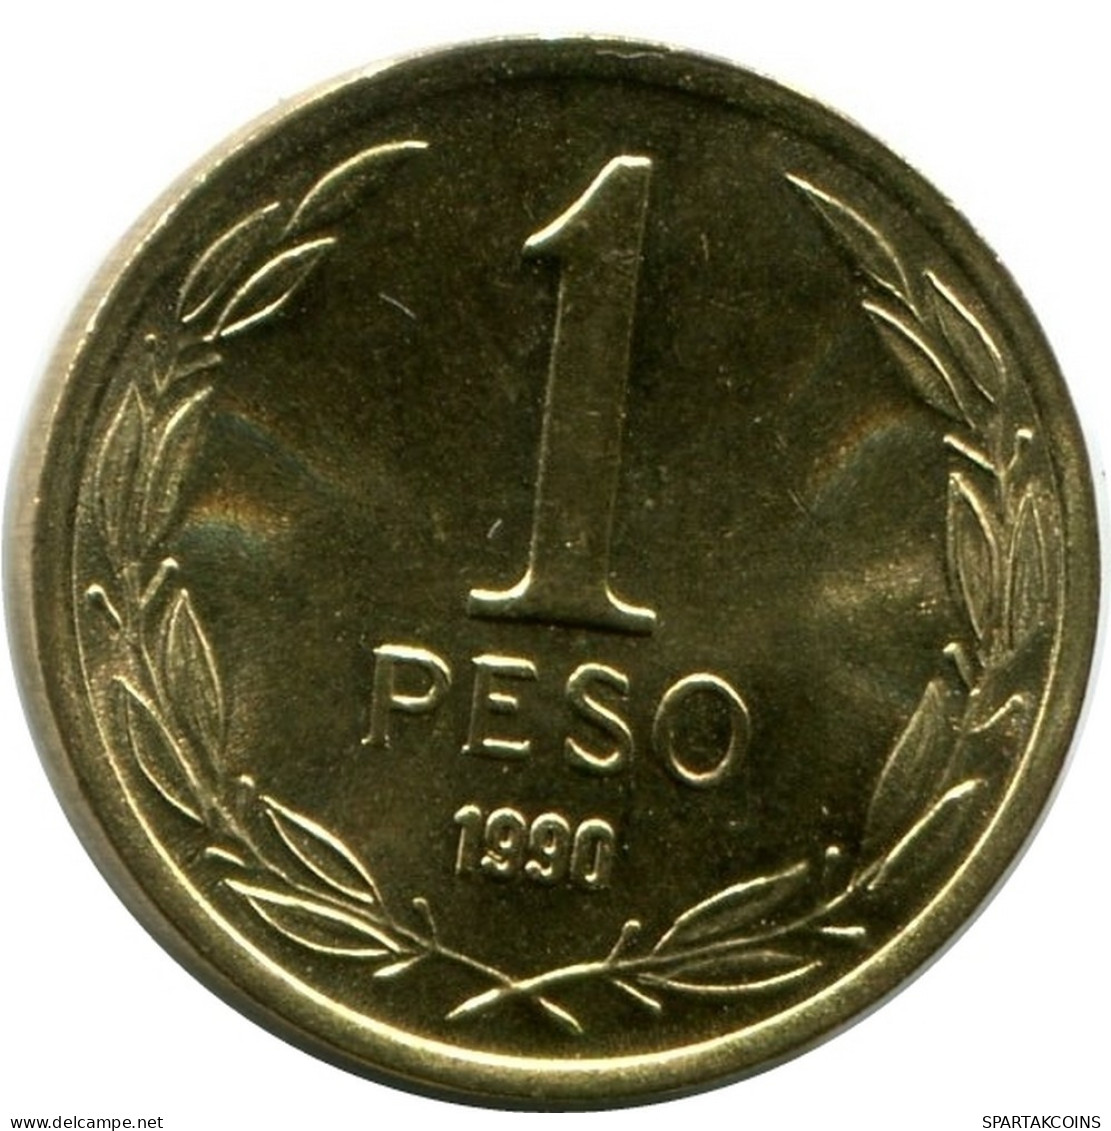 1 PESO 1990 CHILE UNC Münze #M10071.D.A - Chili